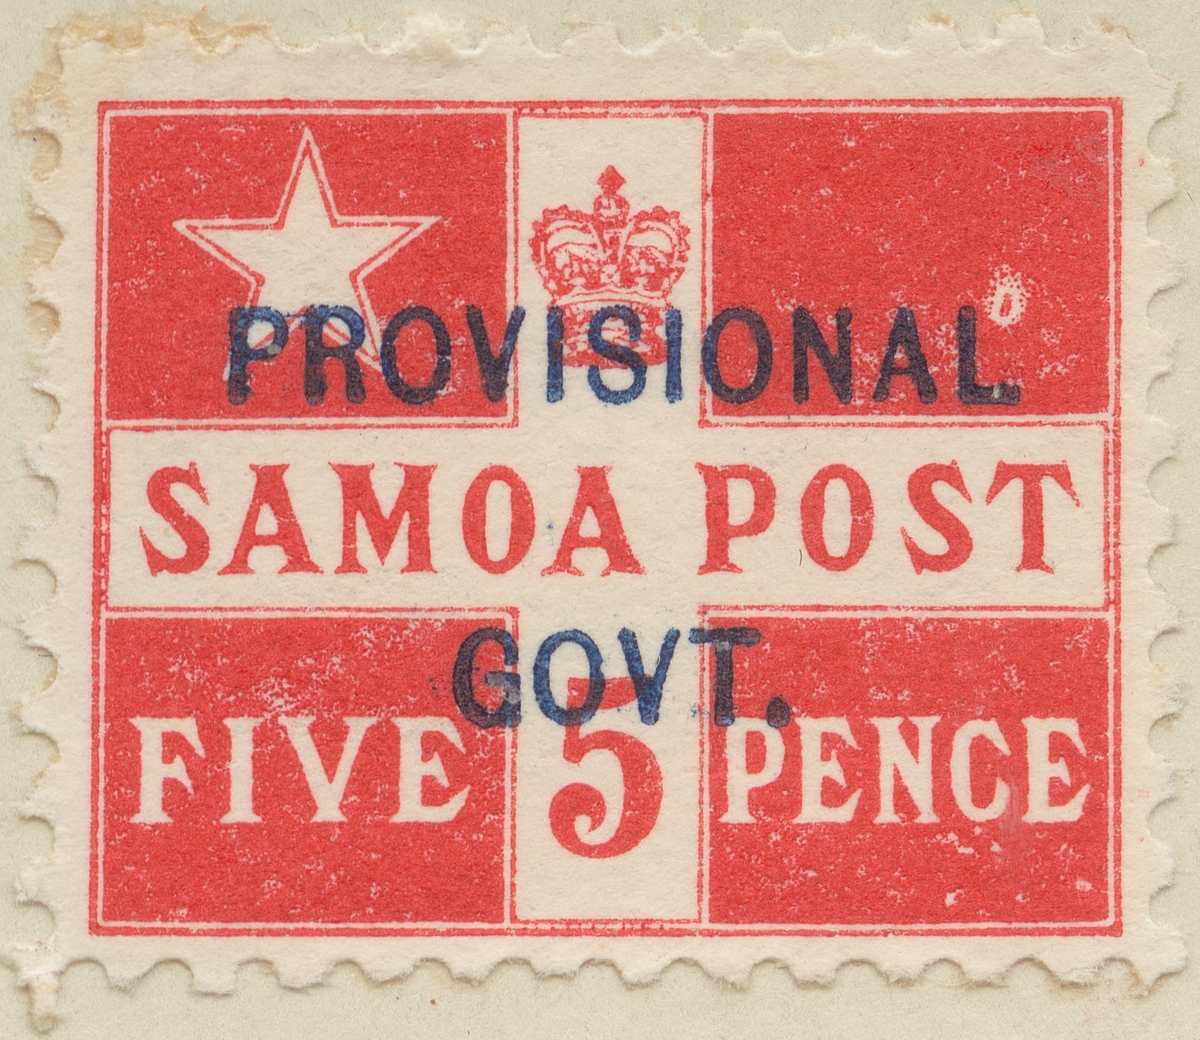 Frimärke ur Gösta Bodmans filatelistiska motivsamling, påbörjad 1950.
Frimärke från Samoa, 1899. Motiv av Kungariket Samoa:s flagga. Frimärke av 1894 med blått överstämpel: "Provisional government".